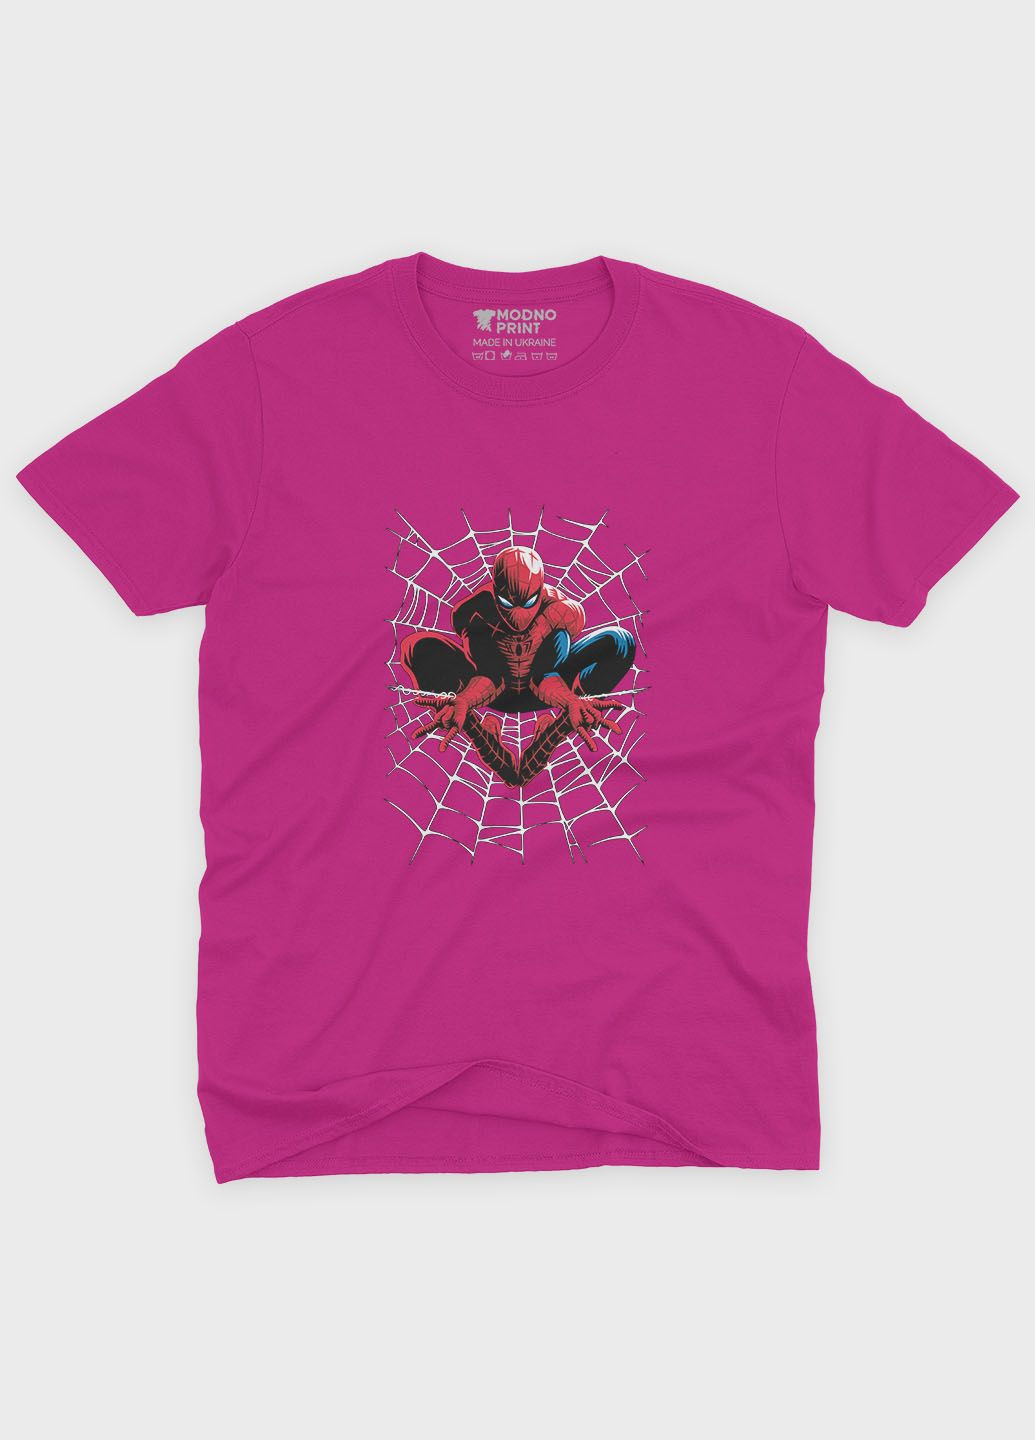 Розовая демисезонная футболка для мальчика с принтом супергероя - человек-паук (ts001-1-fuxj-006-014-064-b) Modno